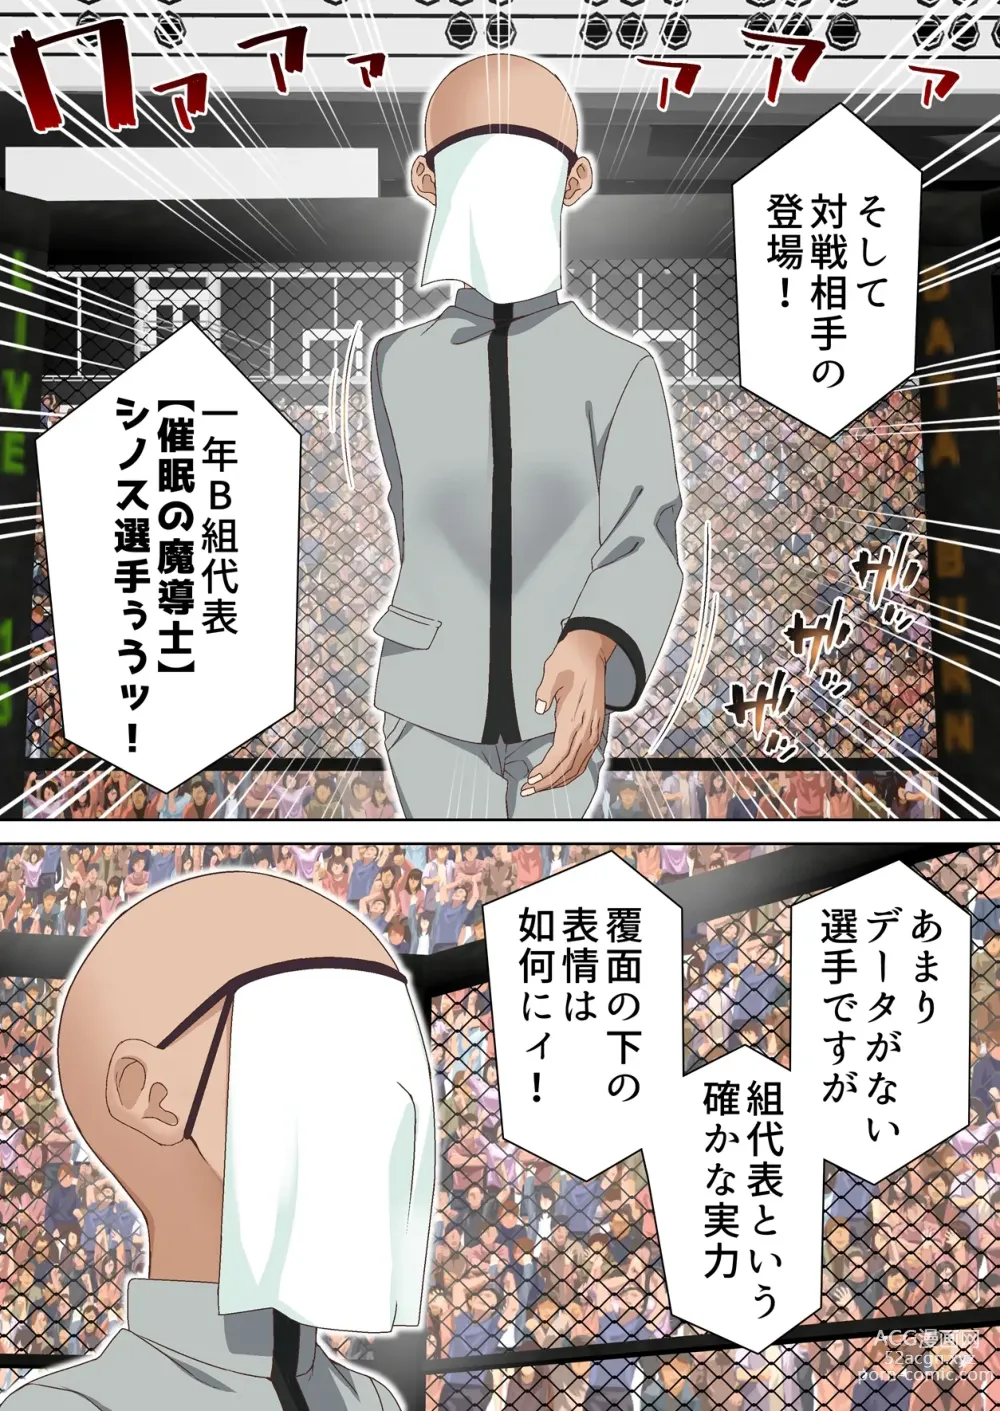 Page 5 of doujinshi Kentou Madoushi ha Saiminjutsu ni ha Kusshinai